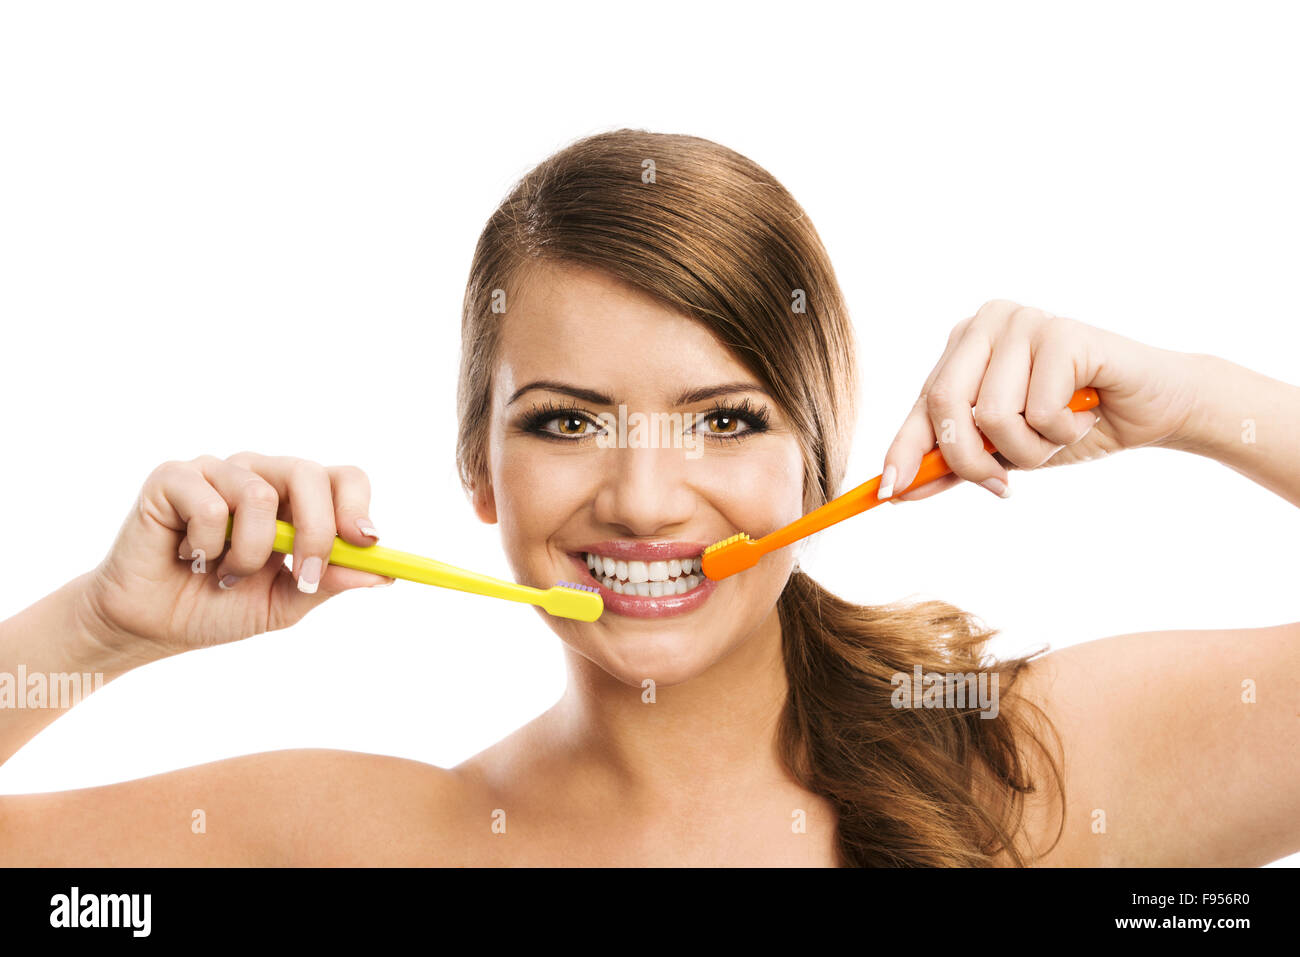 Belle femme avec une brosse à dents. Portrait de soins dentaires. Isolé sur fond blanc. Banque D'Images